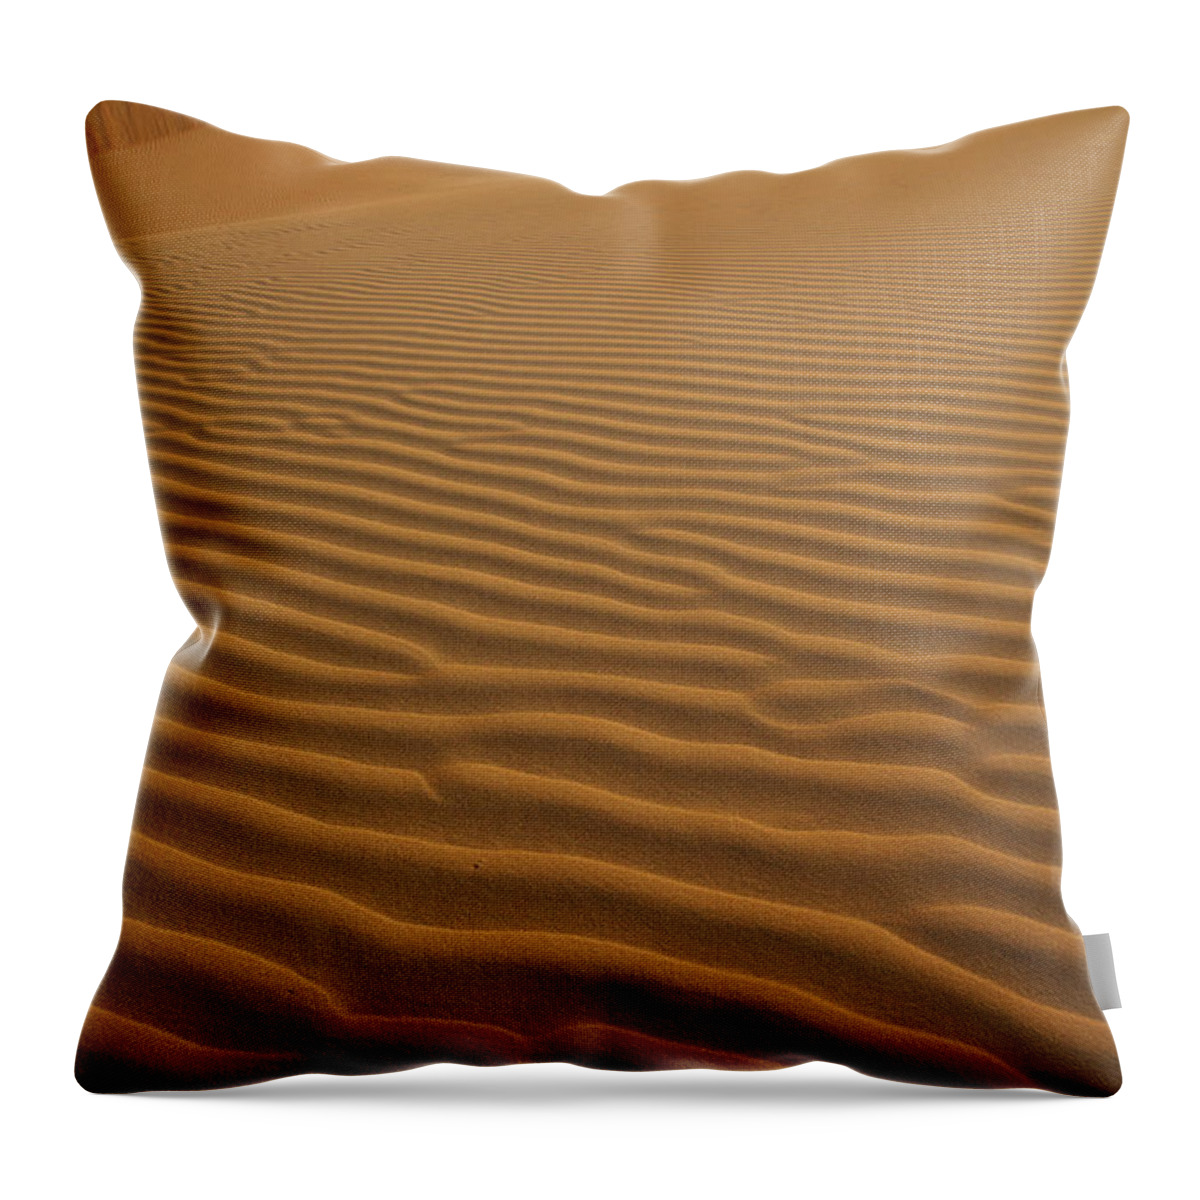 Tranquility Throw Pillow featuring the photograph Rub Al Khali Desert by Achim Thomae